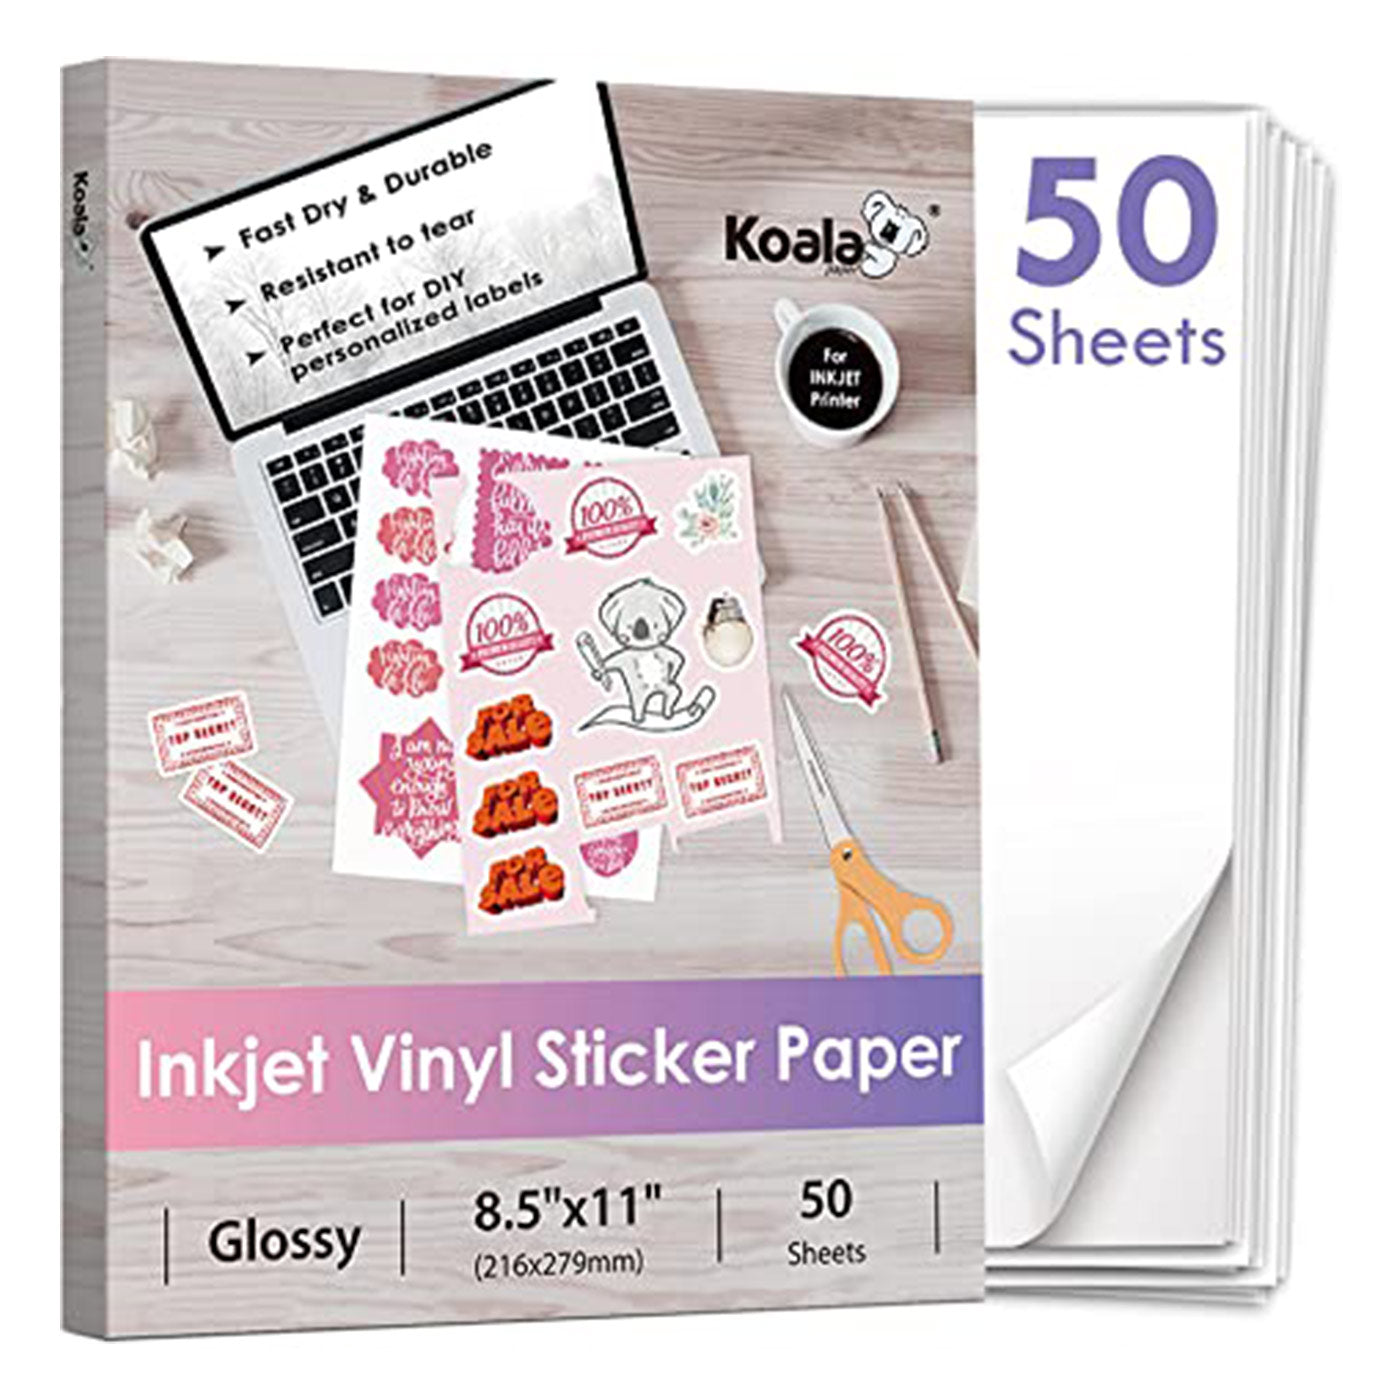 Koala Waterproof Glossy Vinyl Sticker Paper Full Sheet for Inkjet Printer 8.5x11 Inches